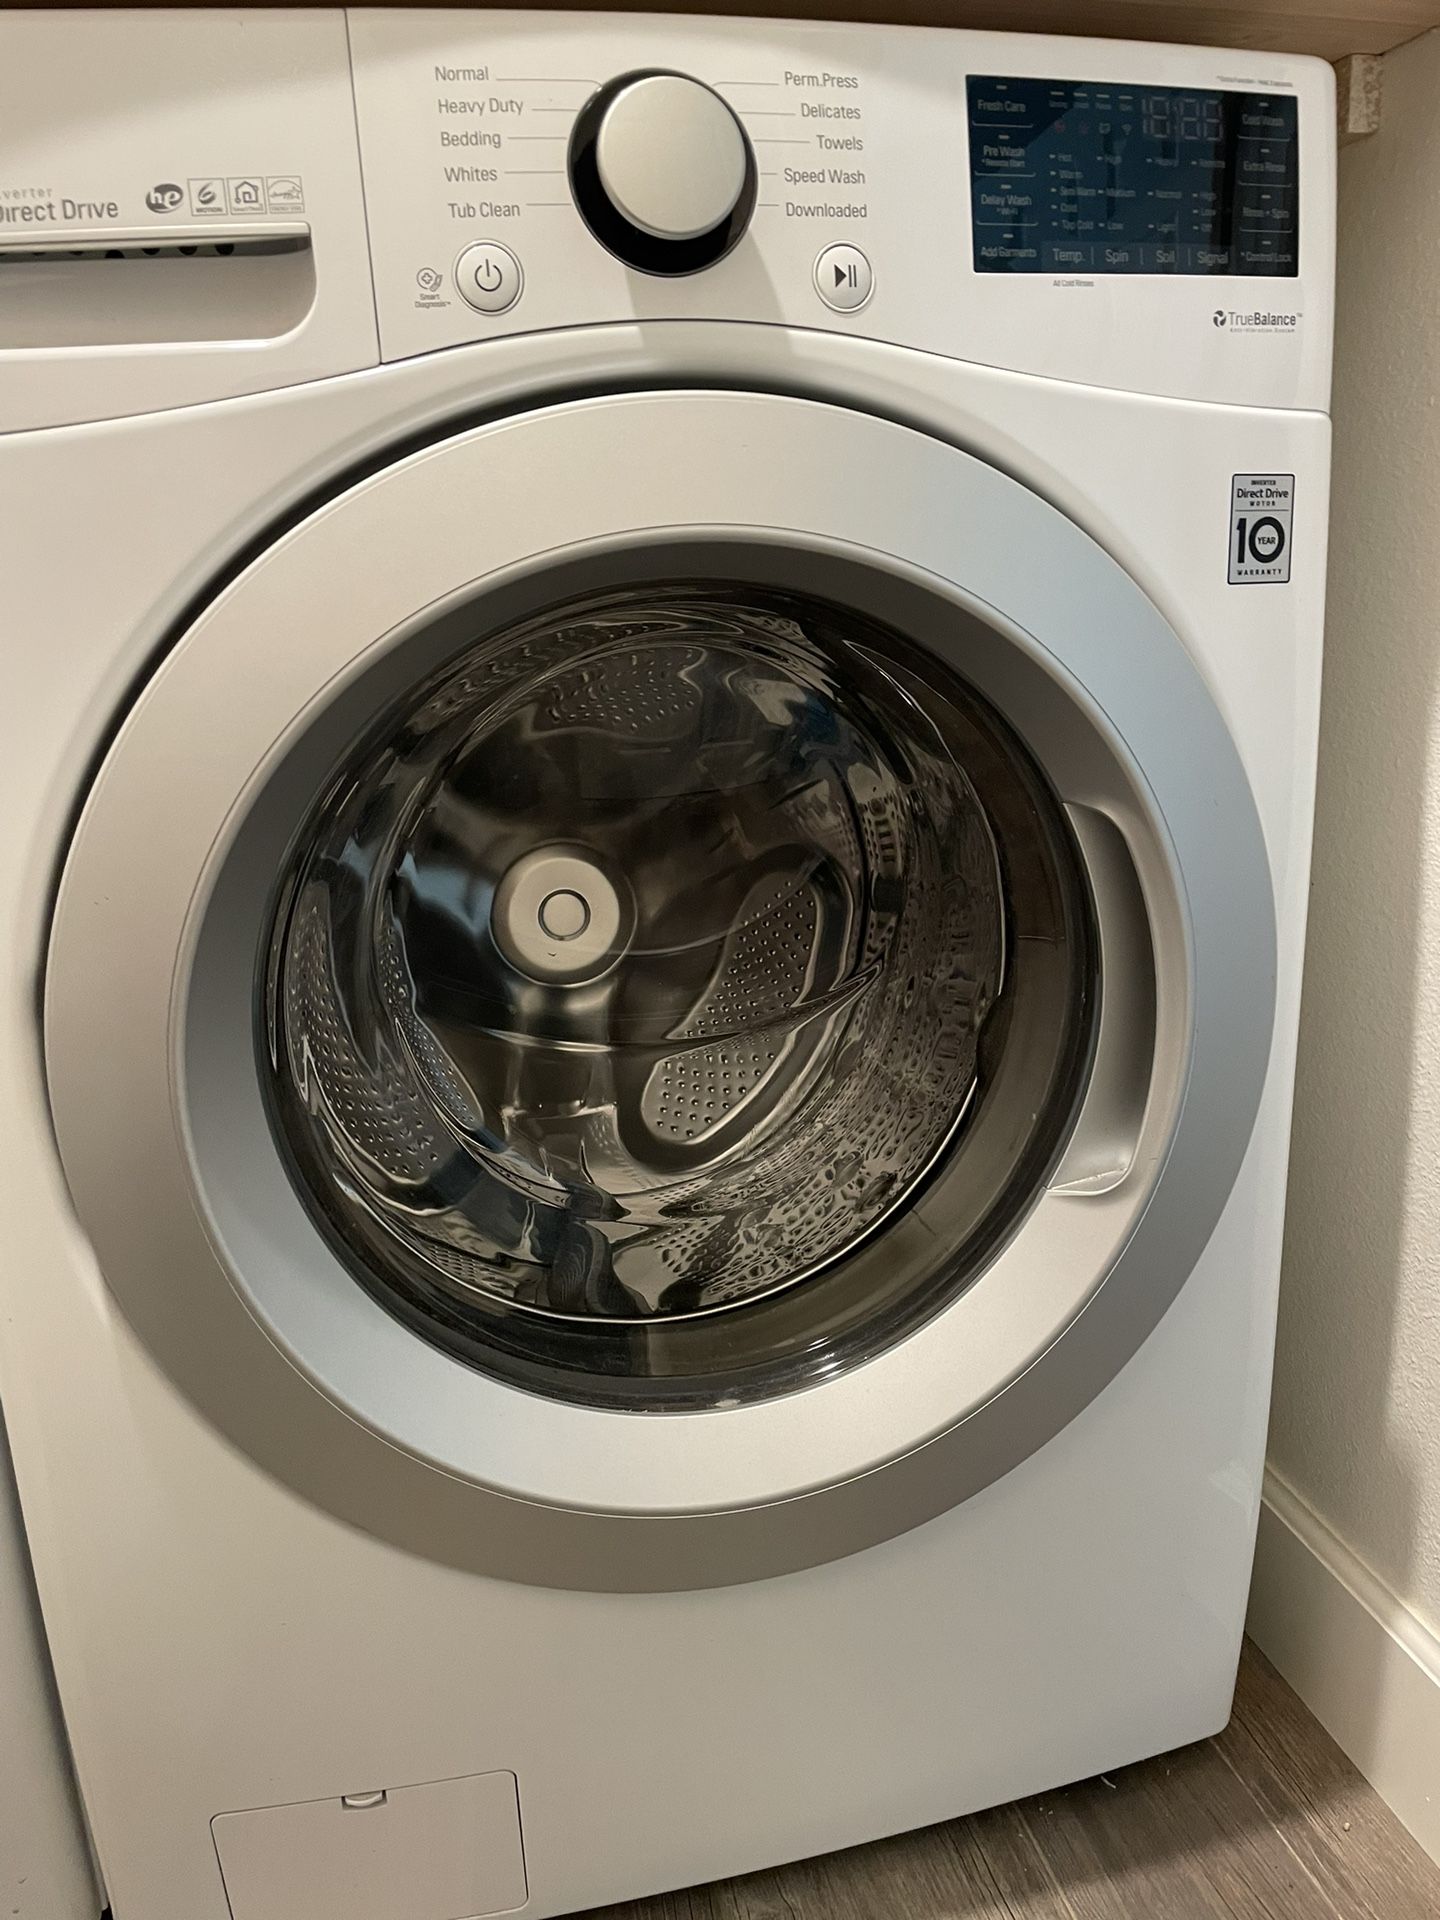 GE Washing Machine and dryer